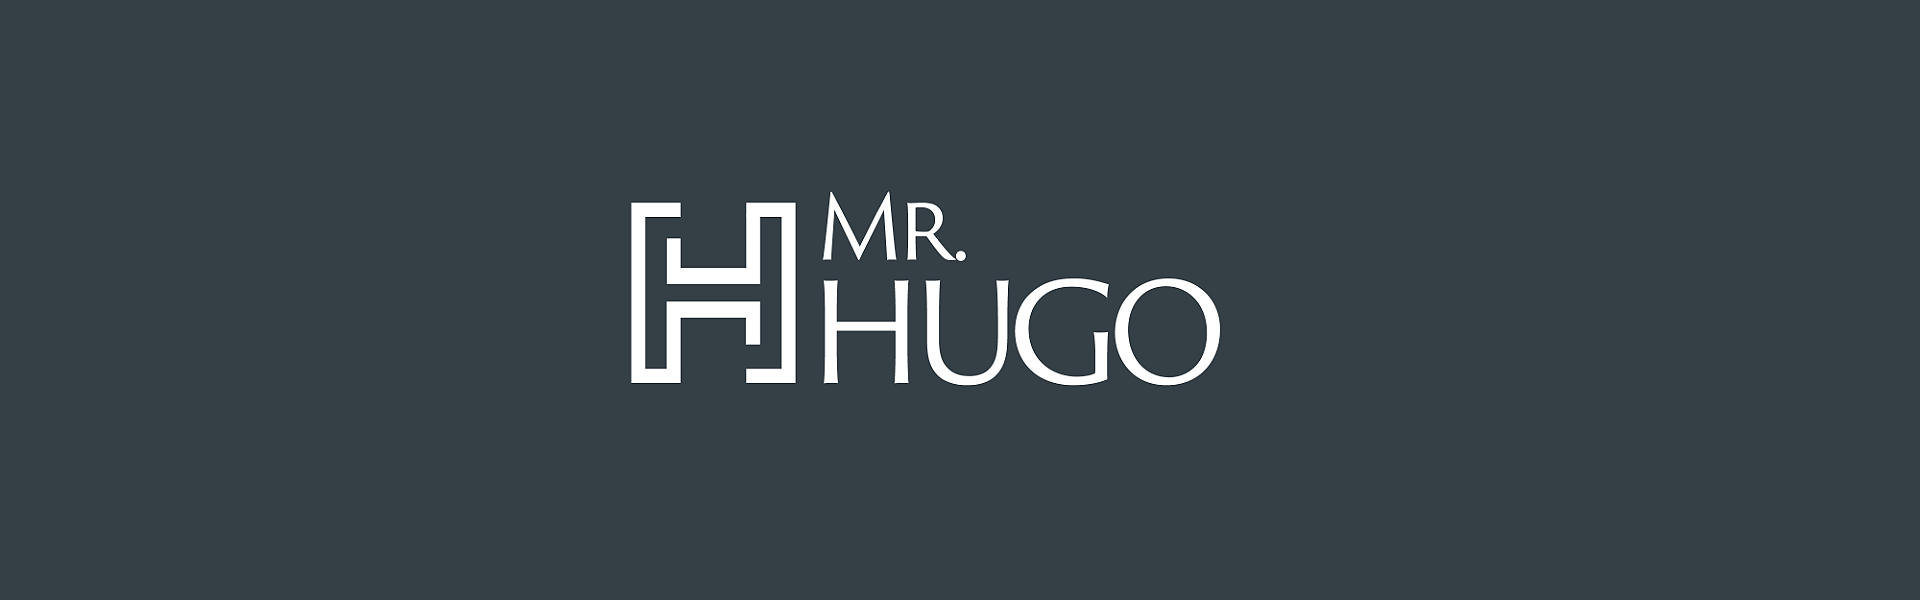 Mr Hugo